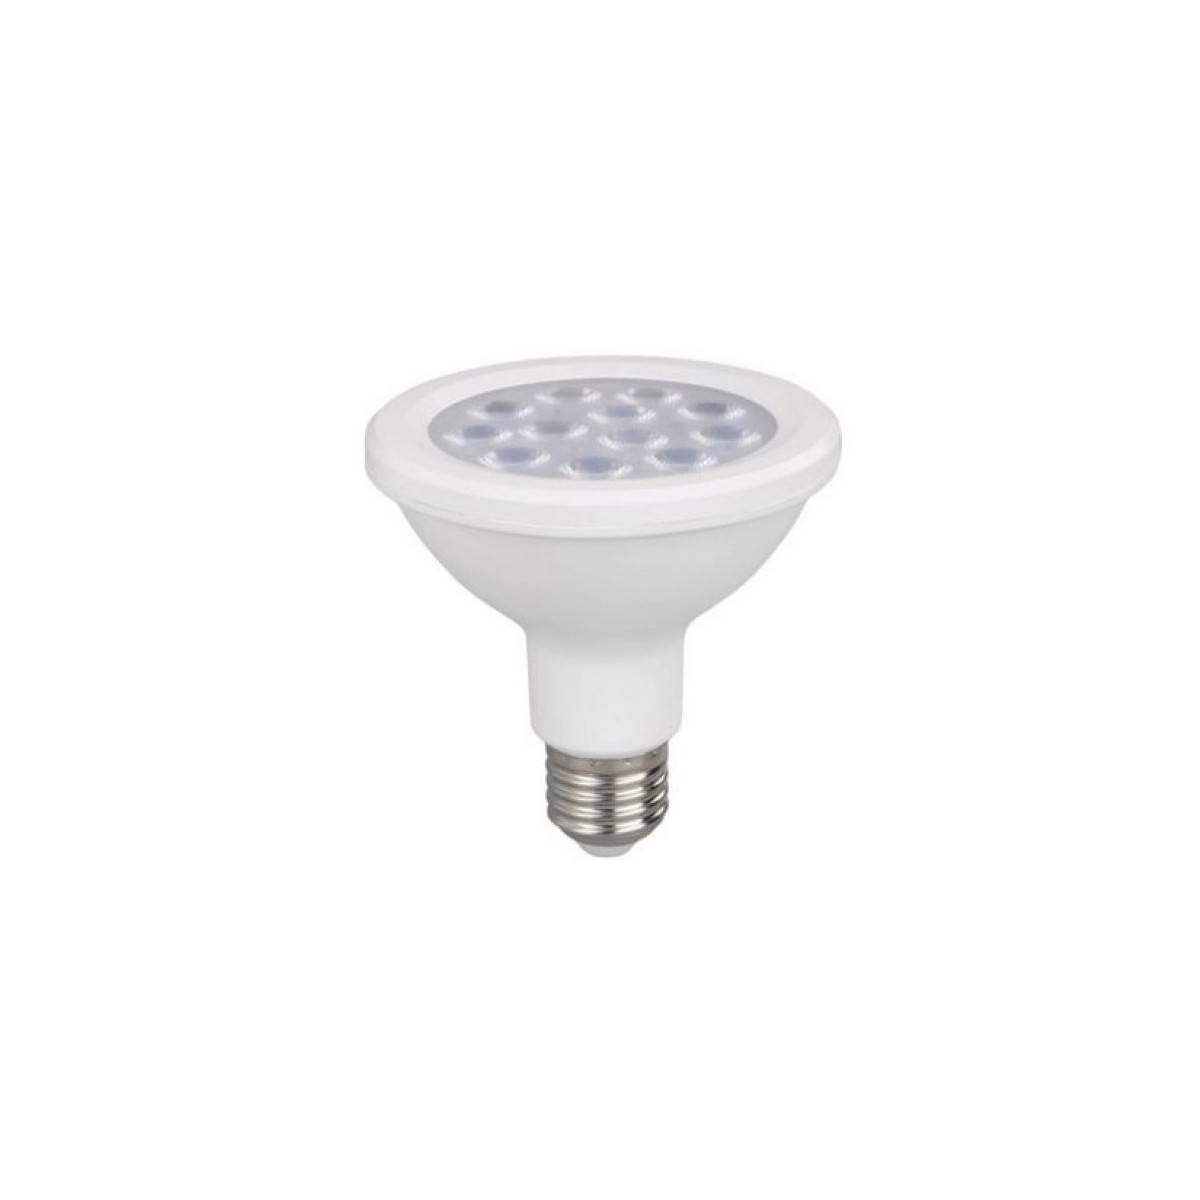 LED-Lampe IP65 Außeneinsatz E27